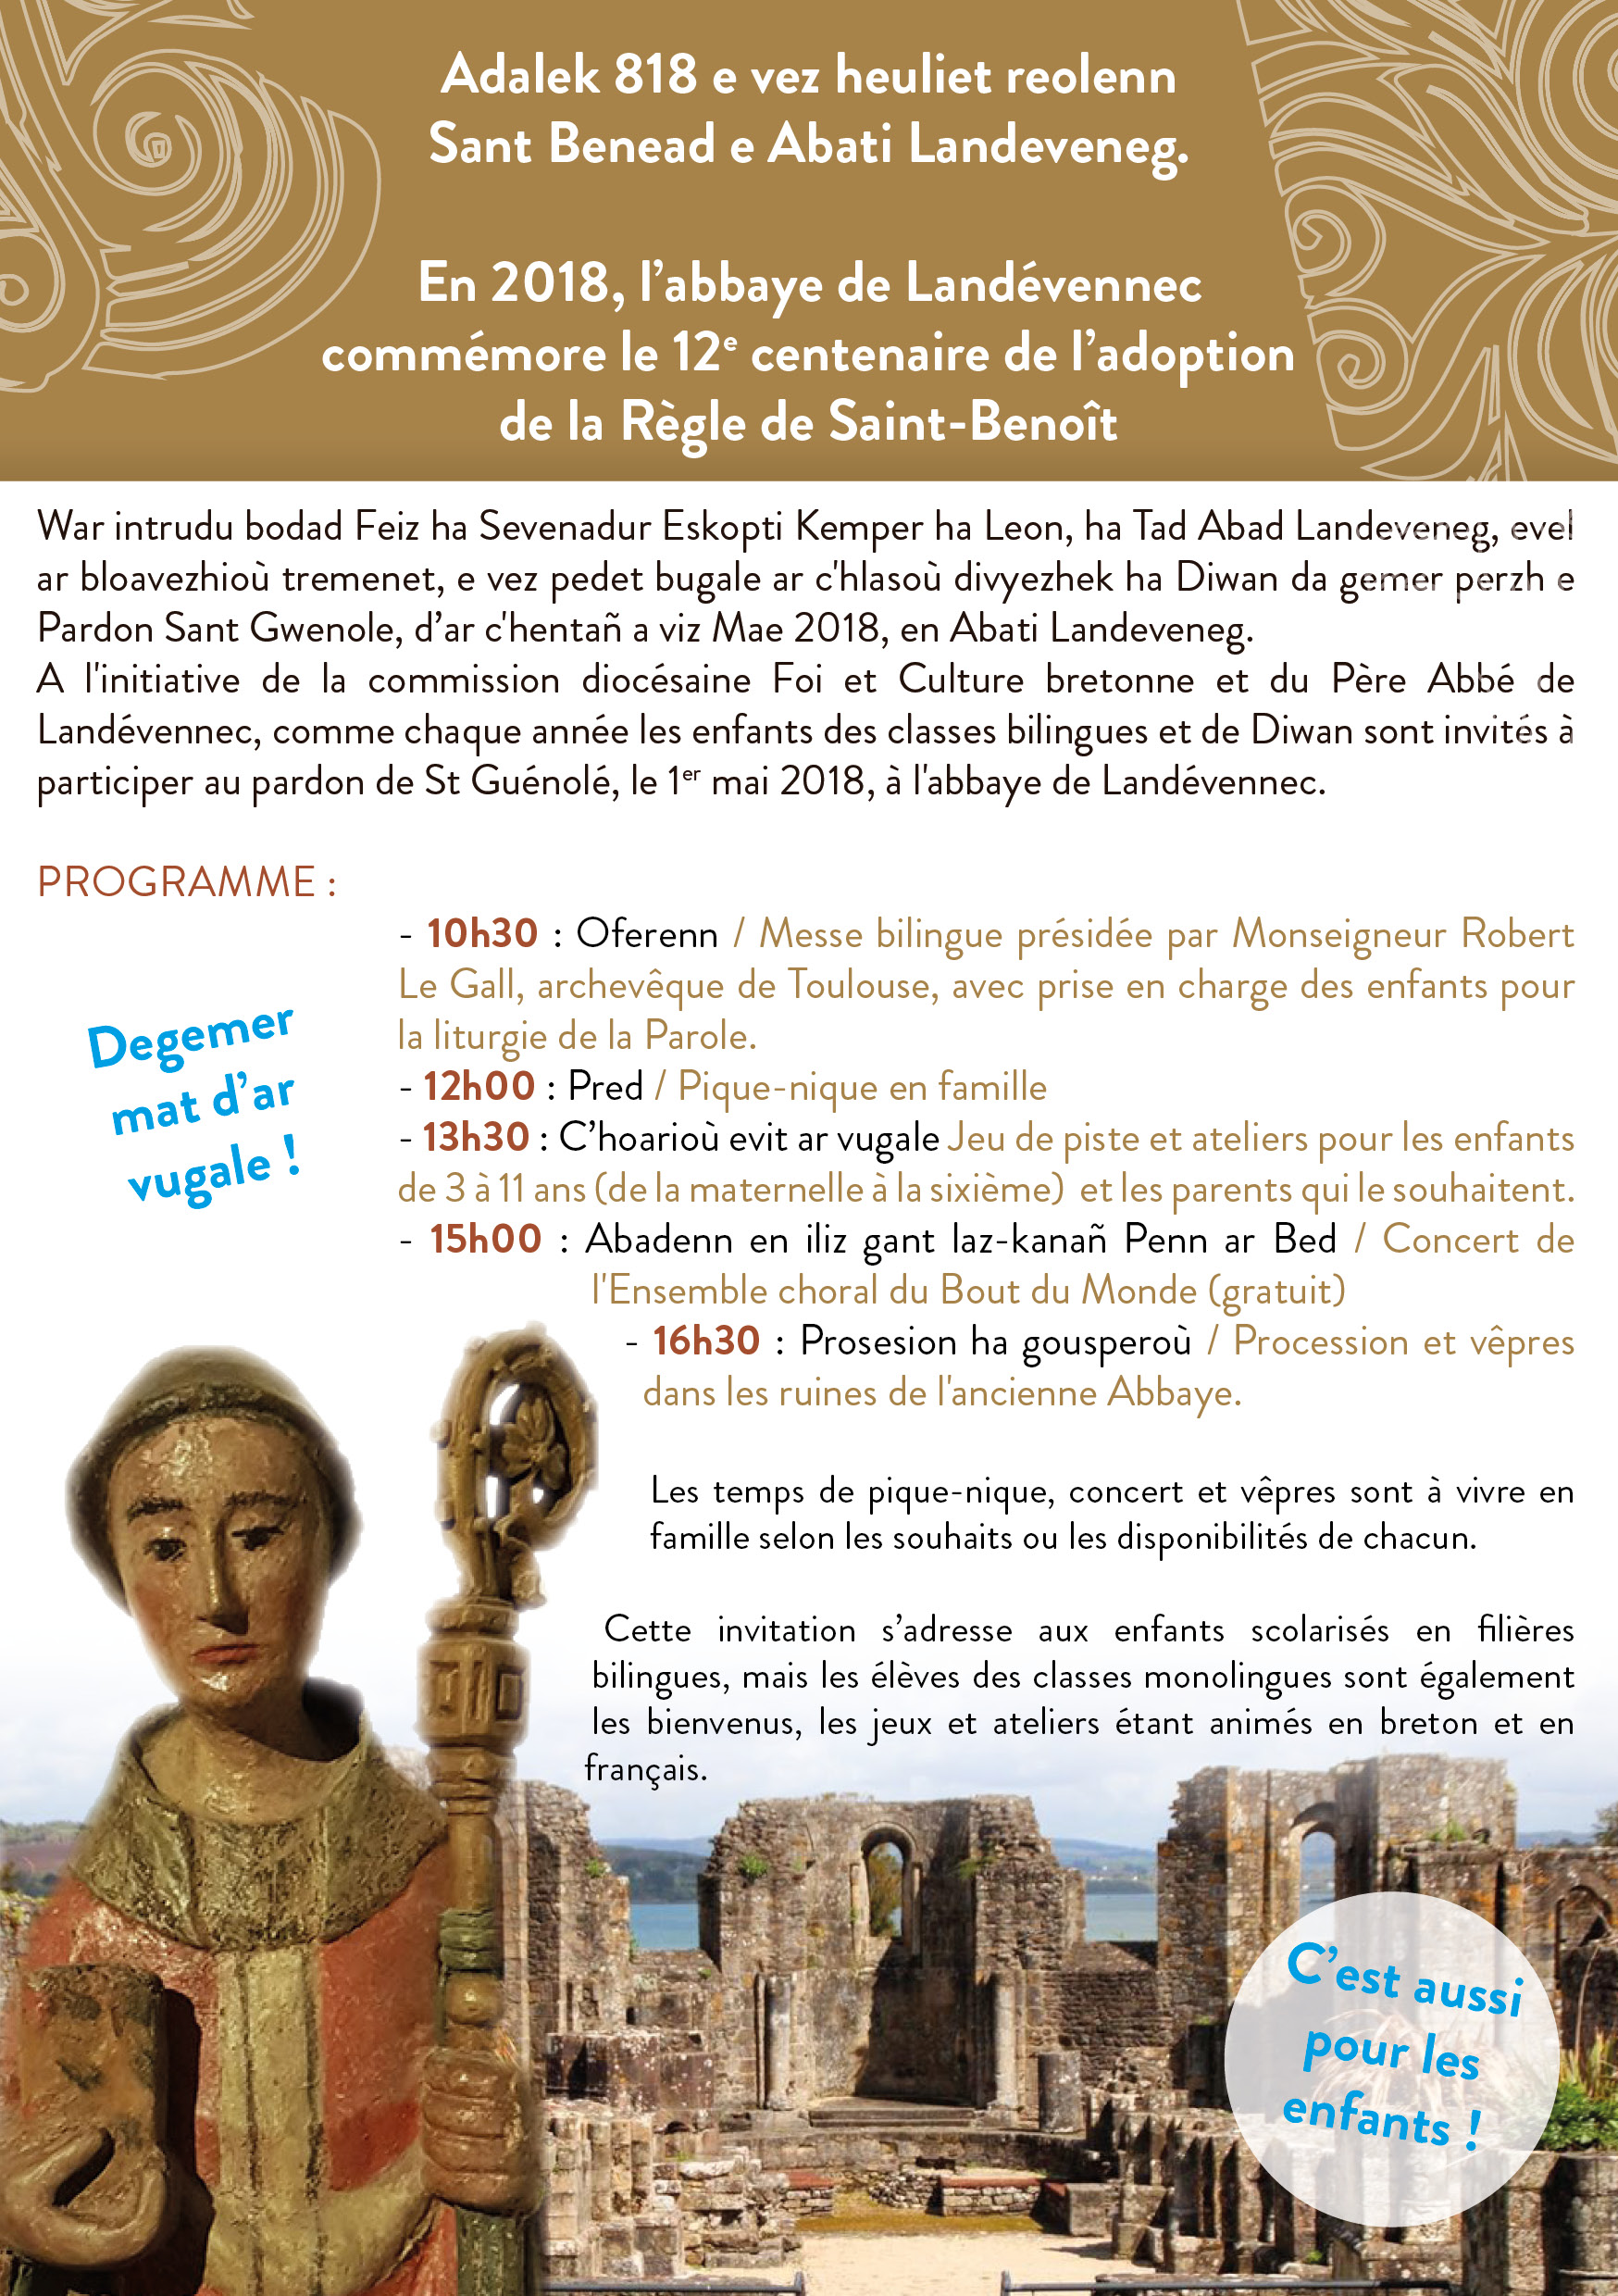 Pardon breton de saint Gwénolé pour les enfants à Landévennec (29) le 1er mai 2018